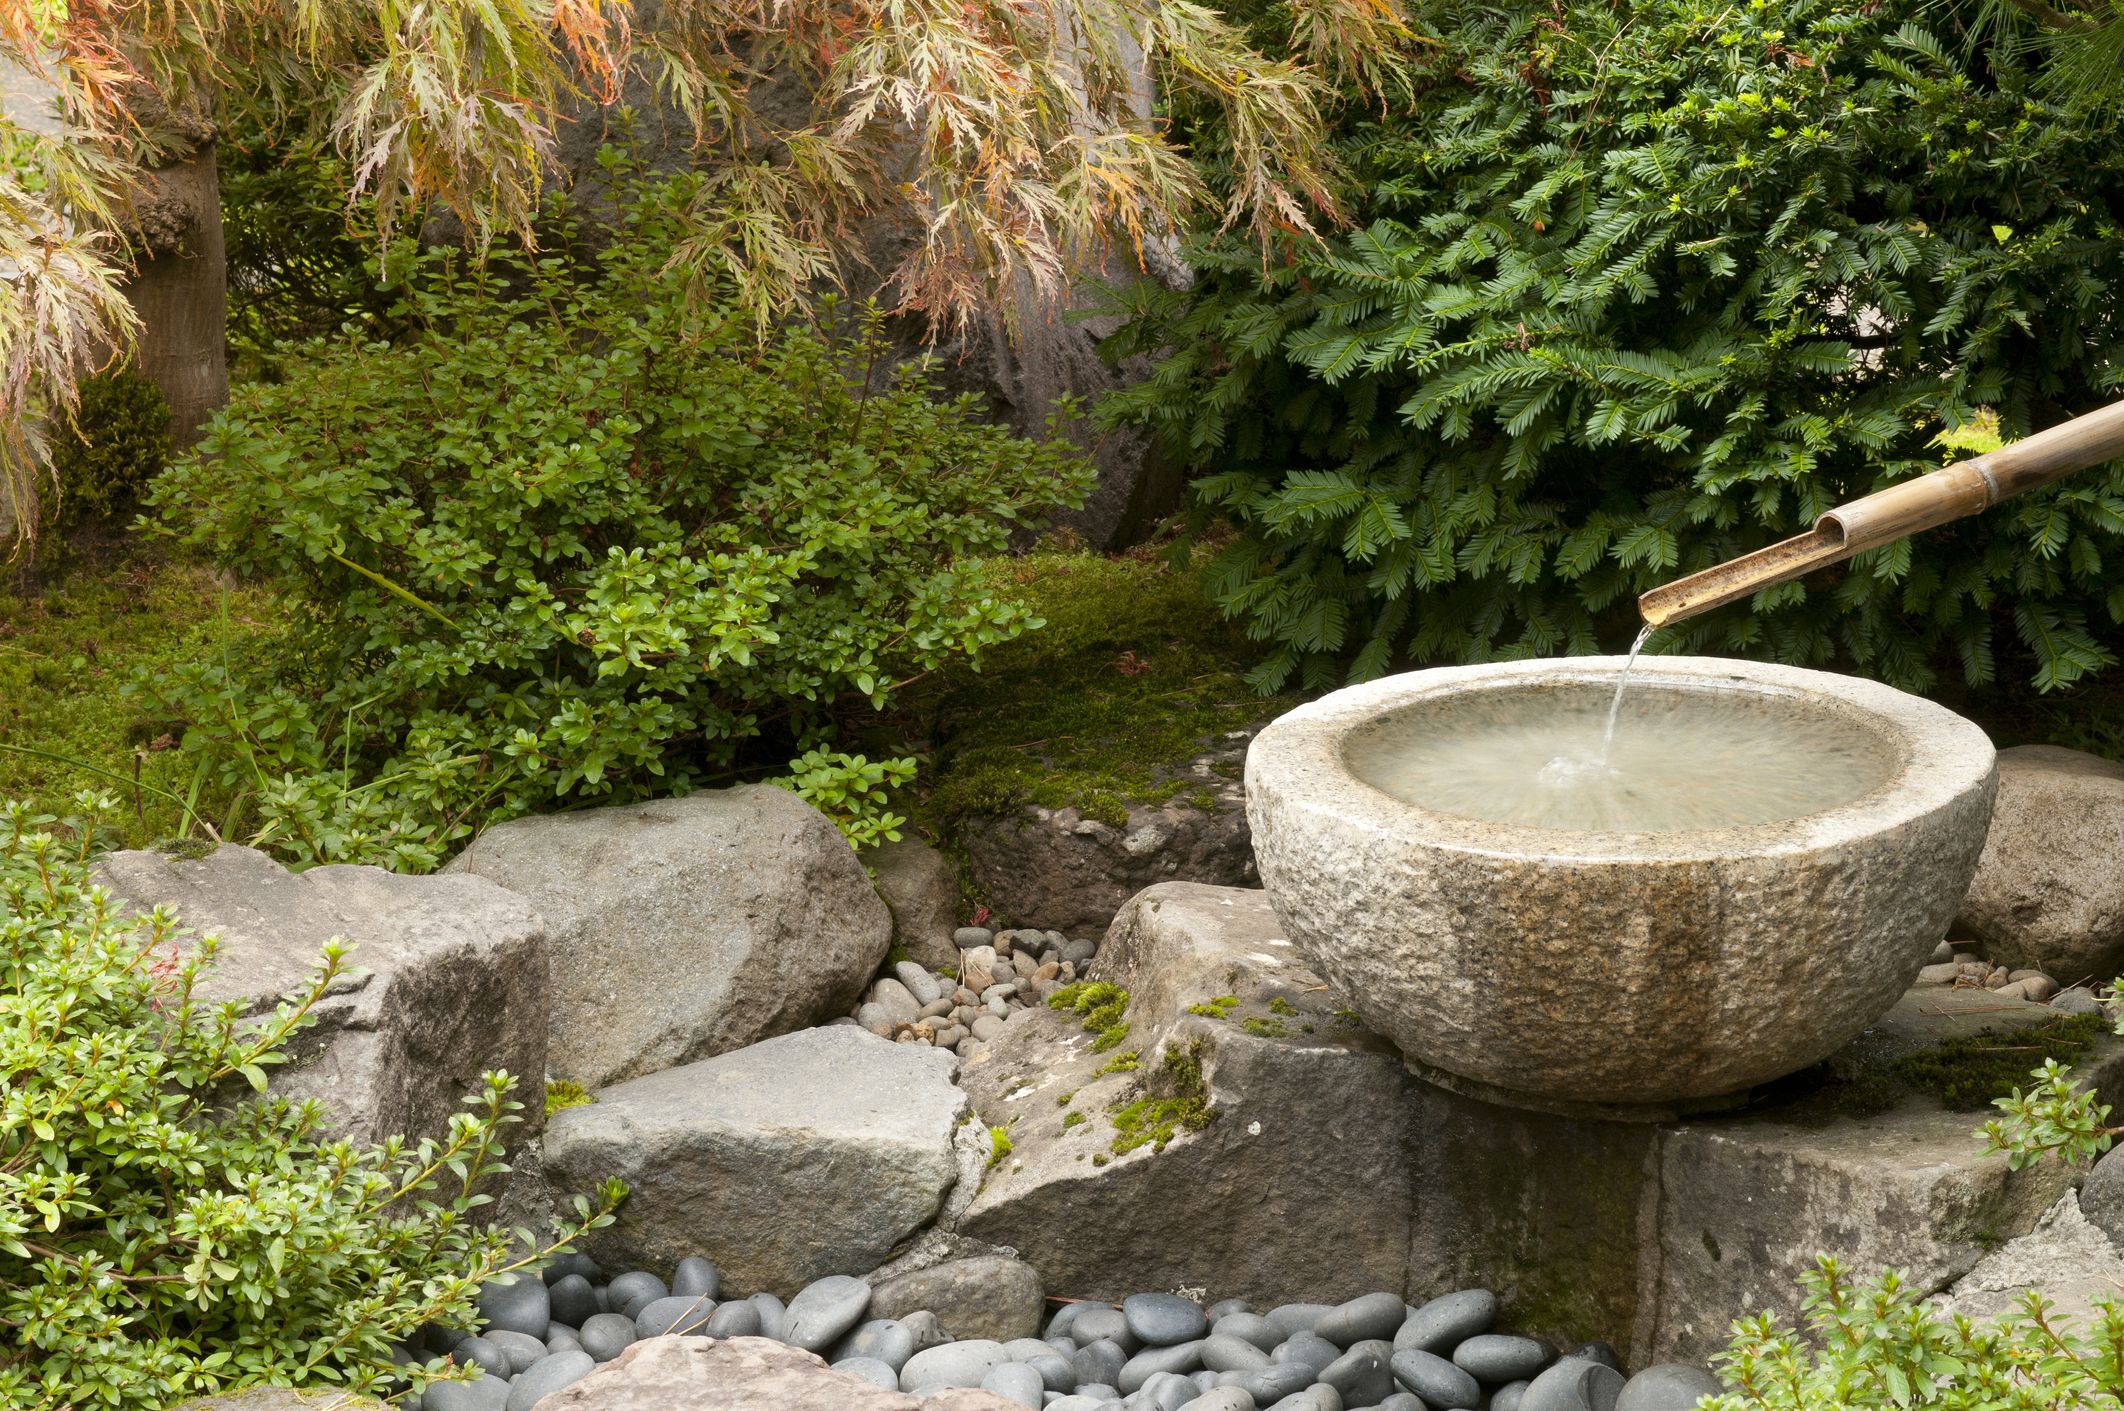 El jardín Zen: tendencia en decoración de exteriores - Garden